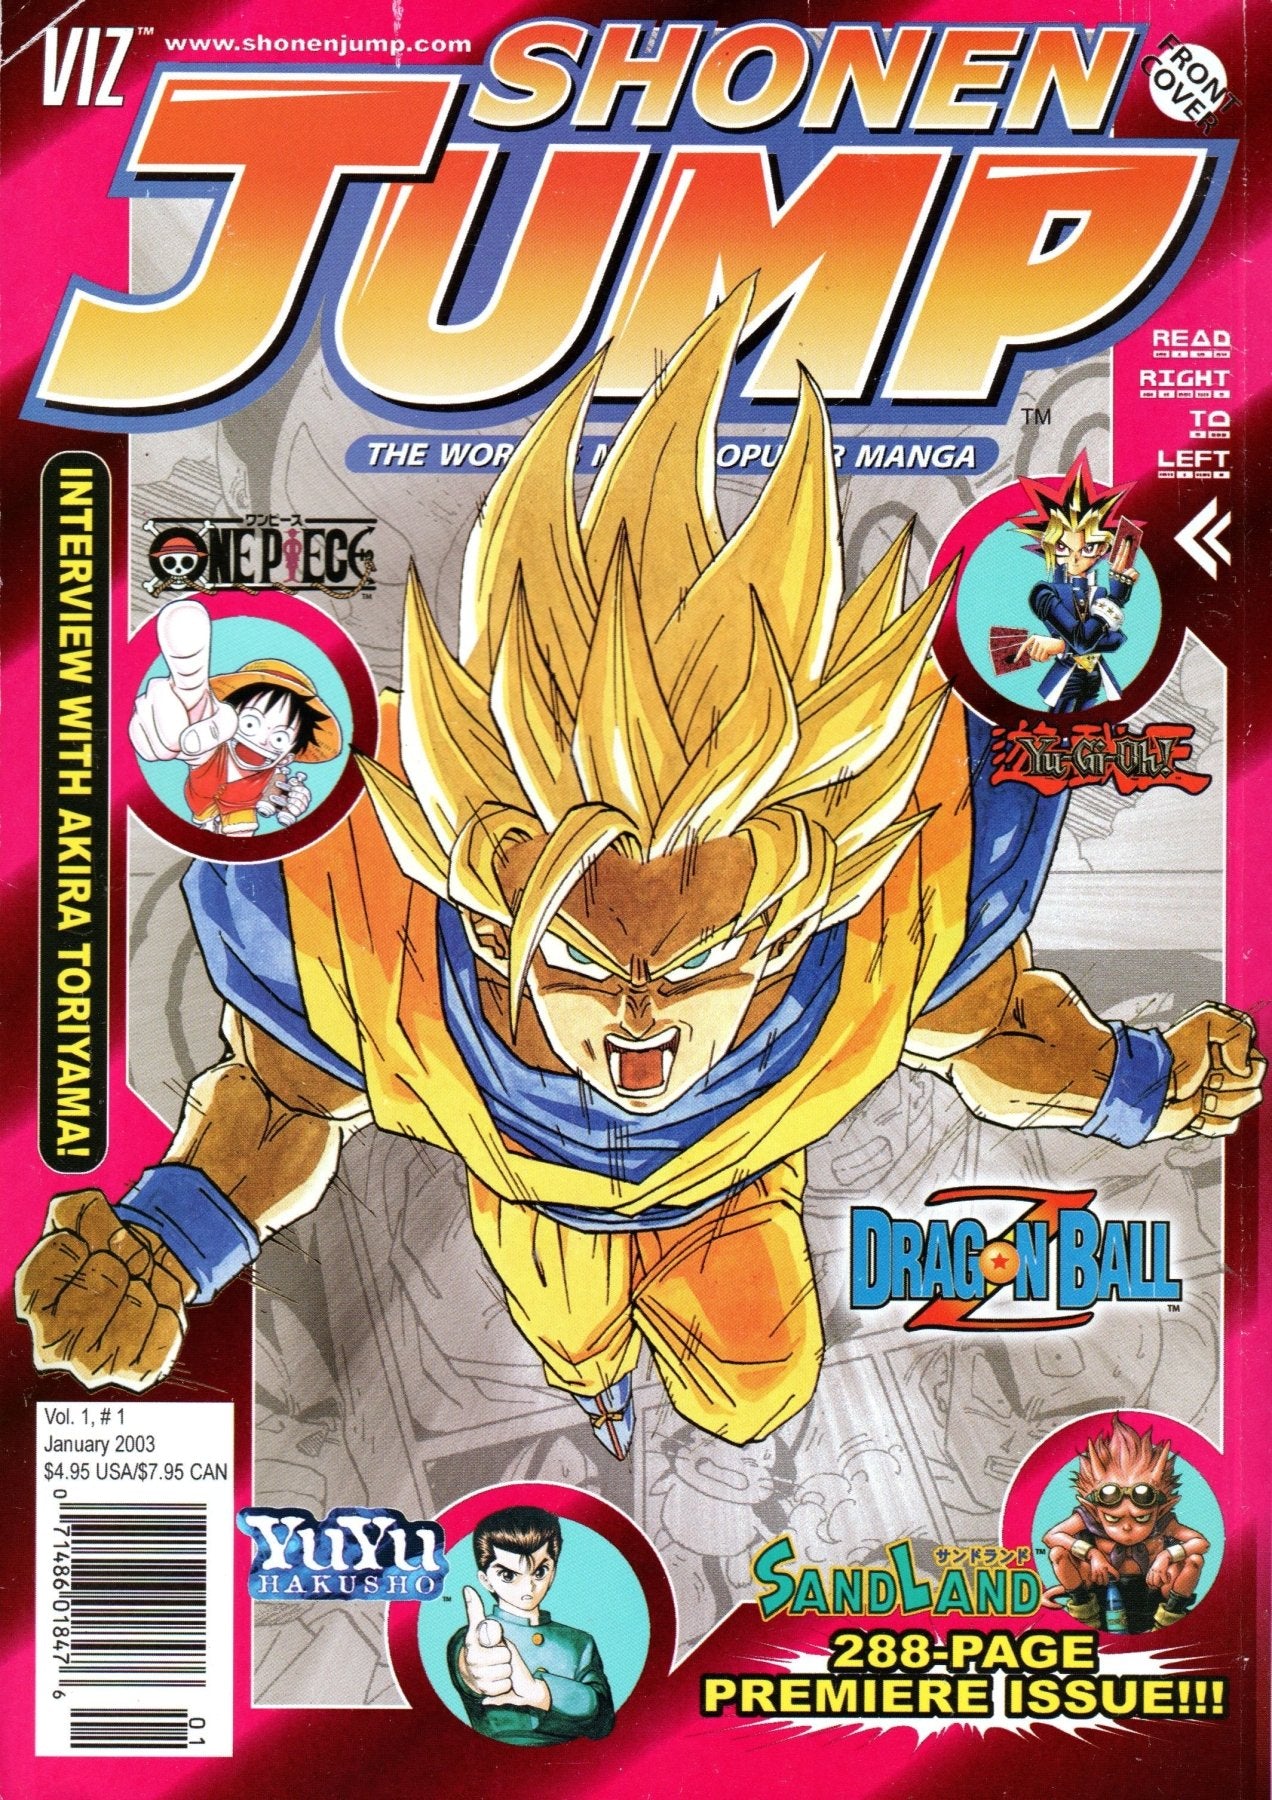 Shonen Jump: January 2003 Volume 1, Issue 1 - Magazine - Retro Island Gaming